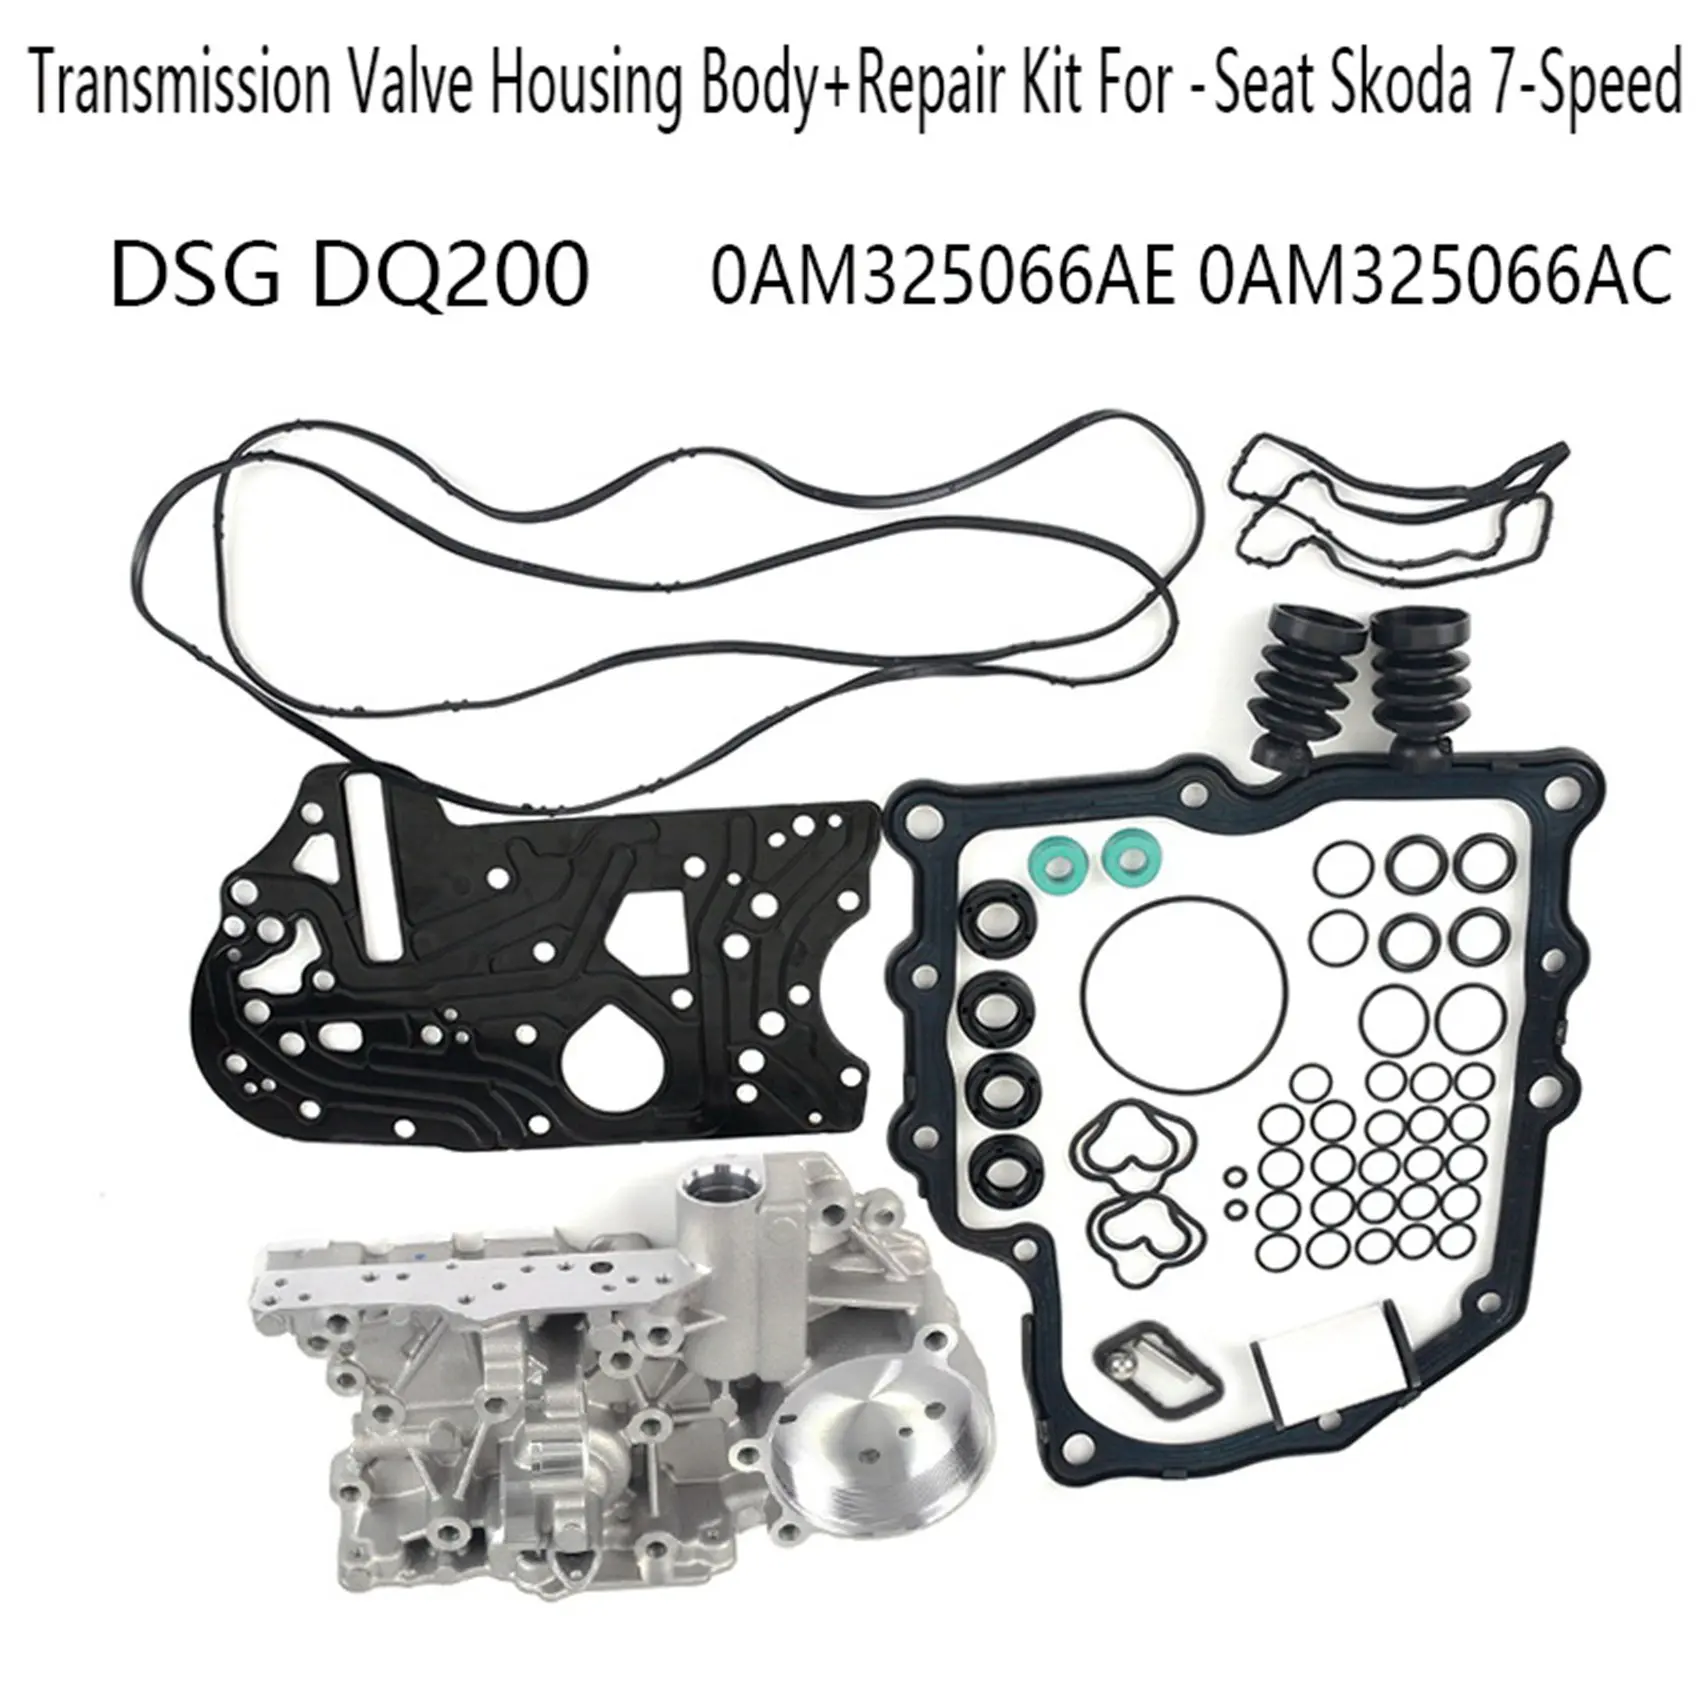 Для Коробки передач DSG DQ200 Корпус Клапана Коробки передач + Ремкомплект для -Audi Seat Skoda 7-Ступенчатая 0AM325066AE 0AM325066AC Изображение 1